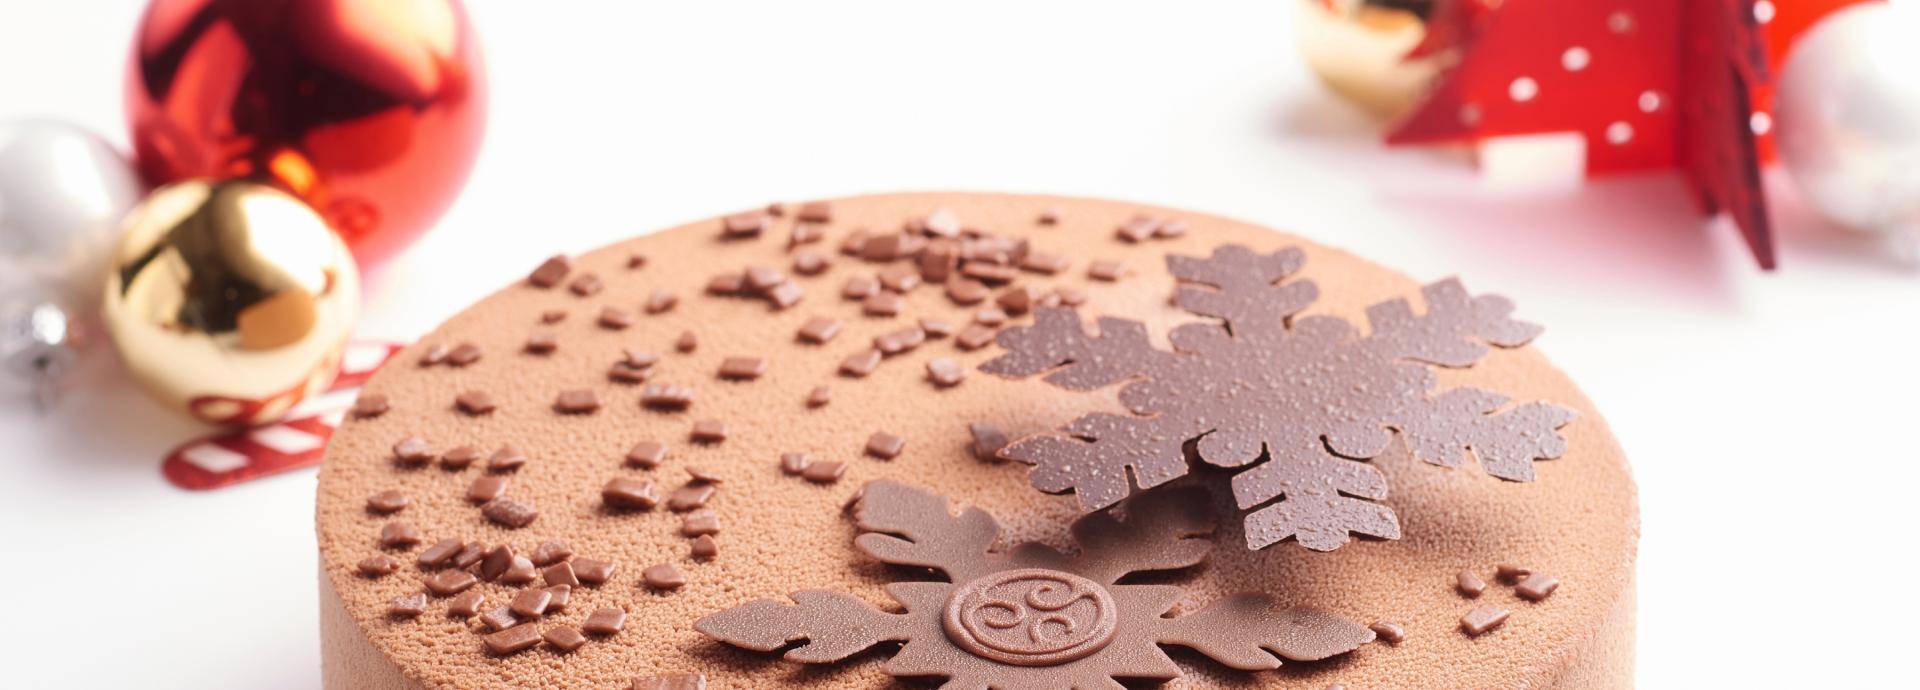 Chocolate Academy İstanbul şeflerinden yılbaşına özel çikolata ve pasta tarifleri